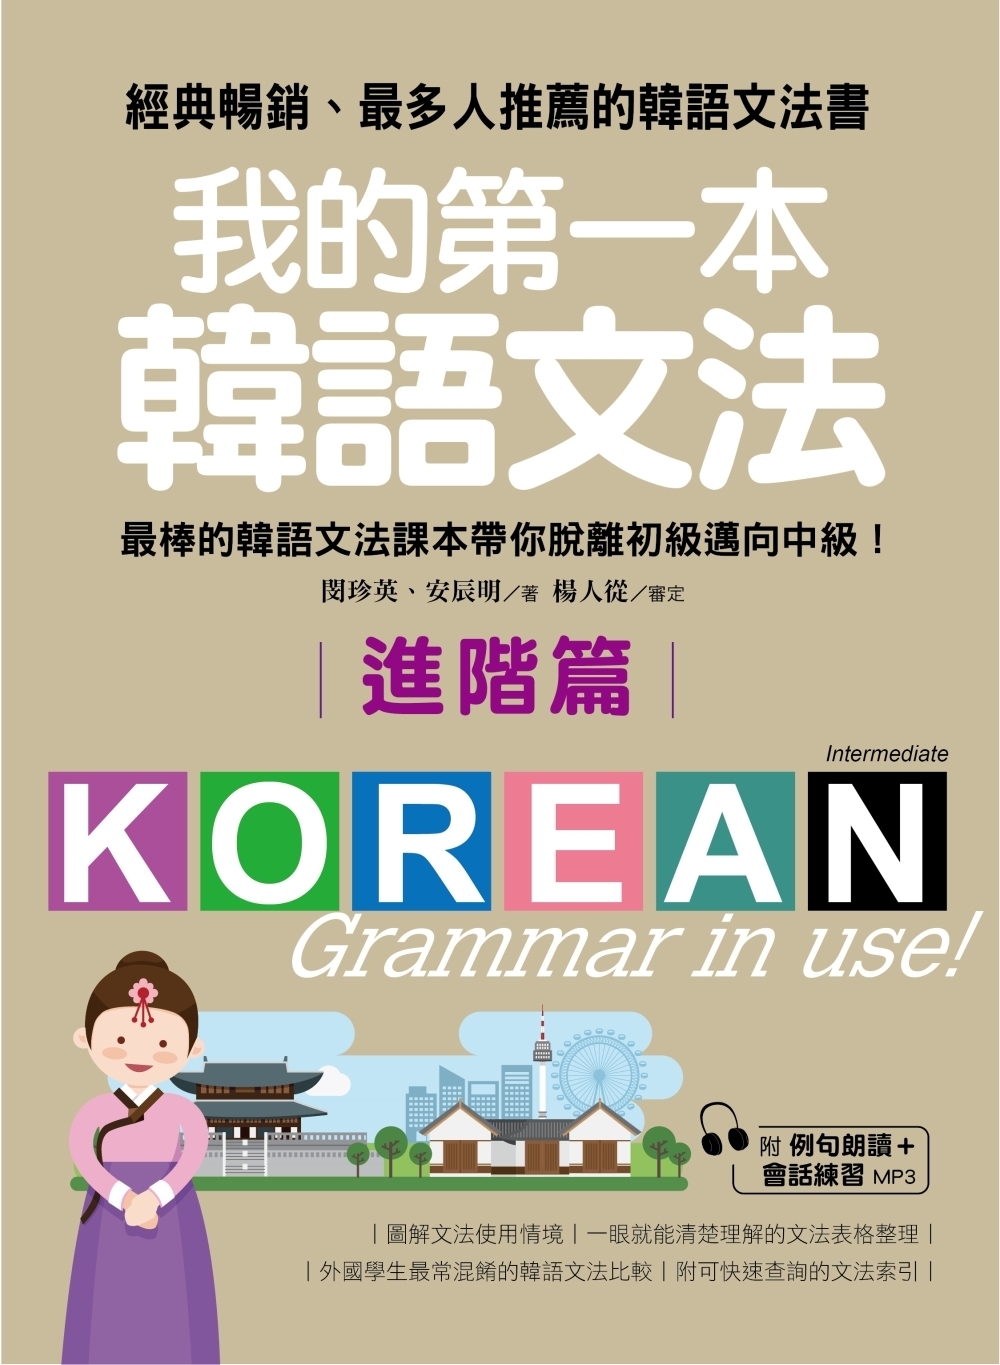 「我的第一本韓語文法 高級」的圖片搜尋結果